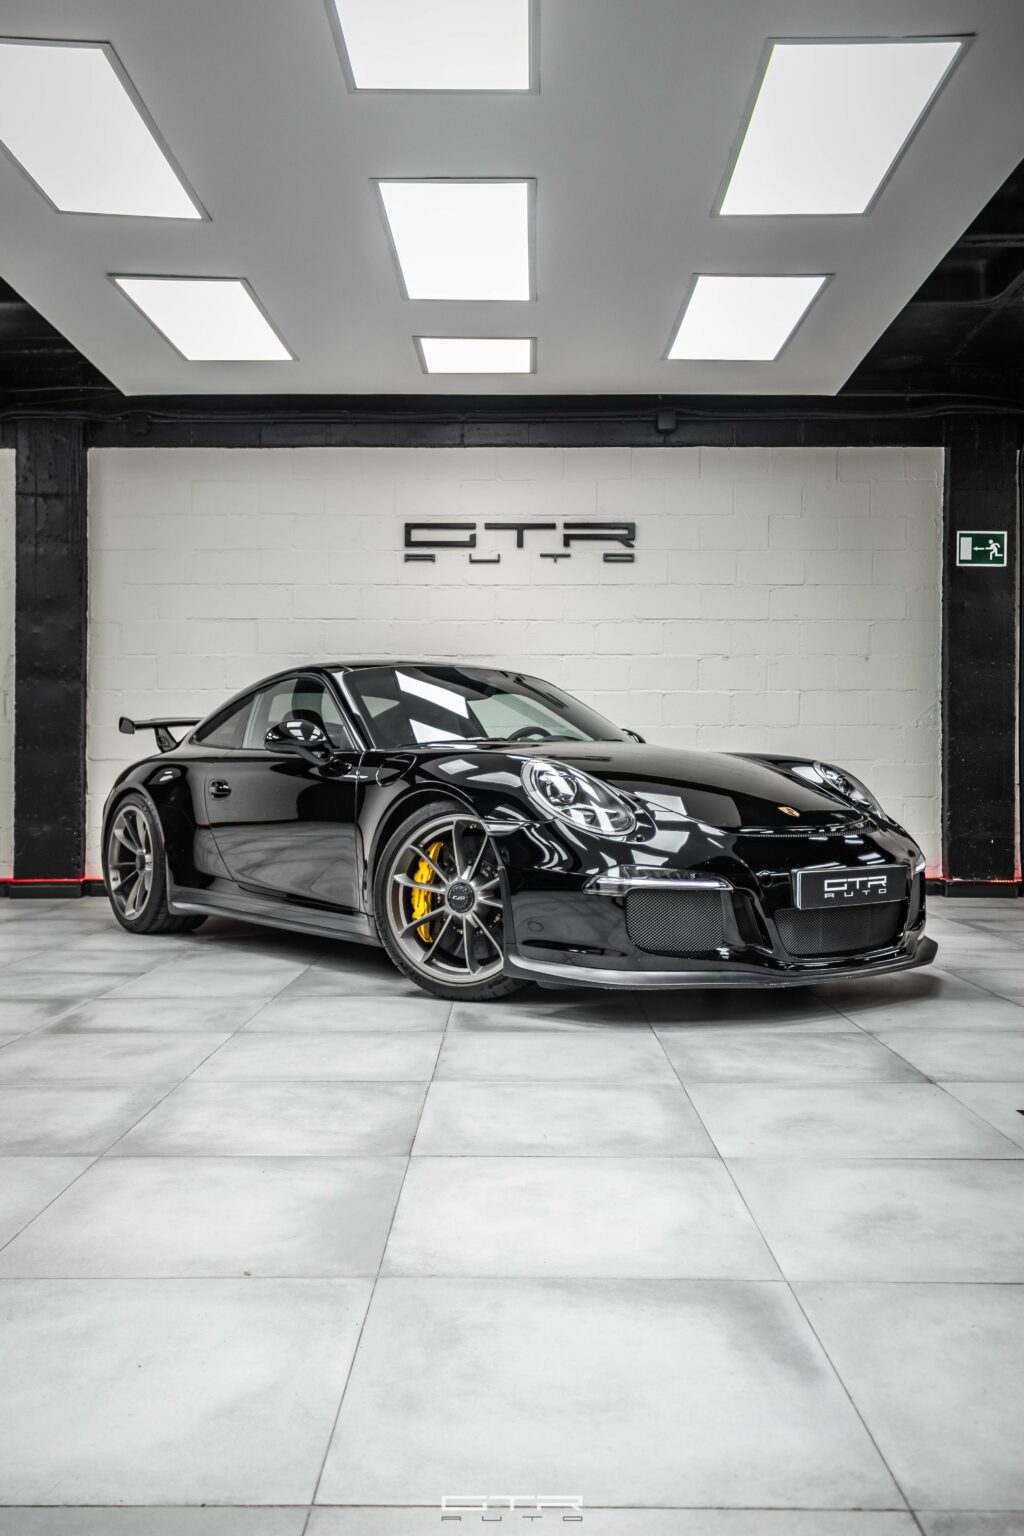 alt="Porsche 911 GT3"